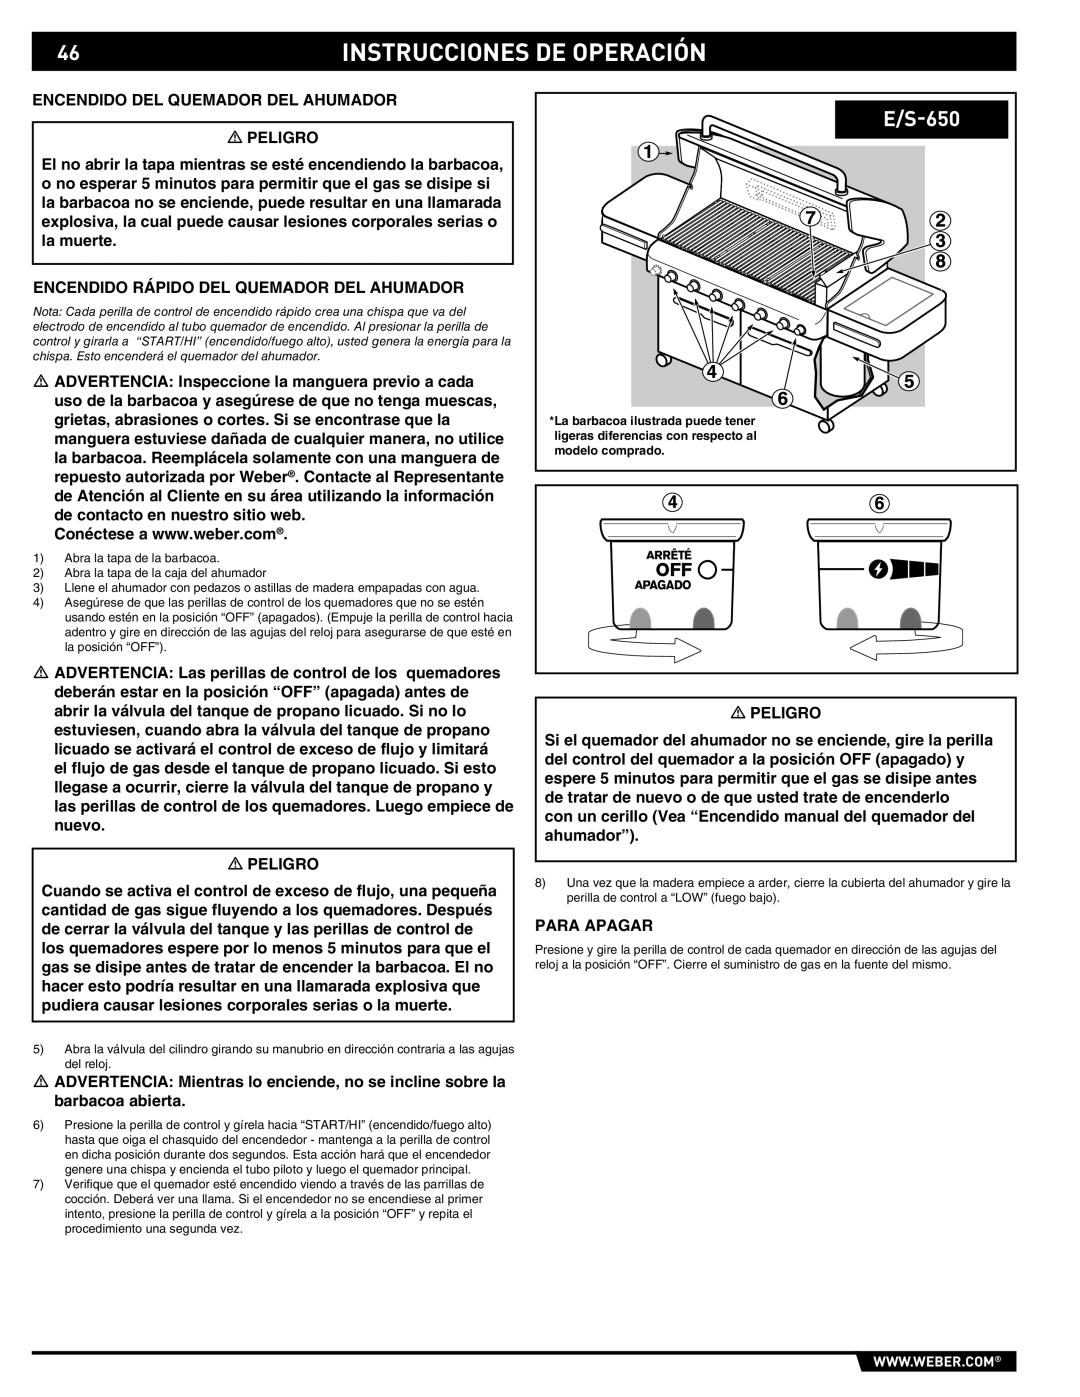 Summit E/S-620/650 manual Encendido DEL Quemador DEL Ahumador Peligro, Encendido Rápido DEL Quemador DEL Ahumador 